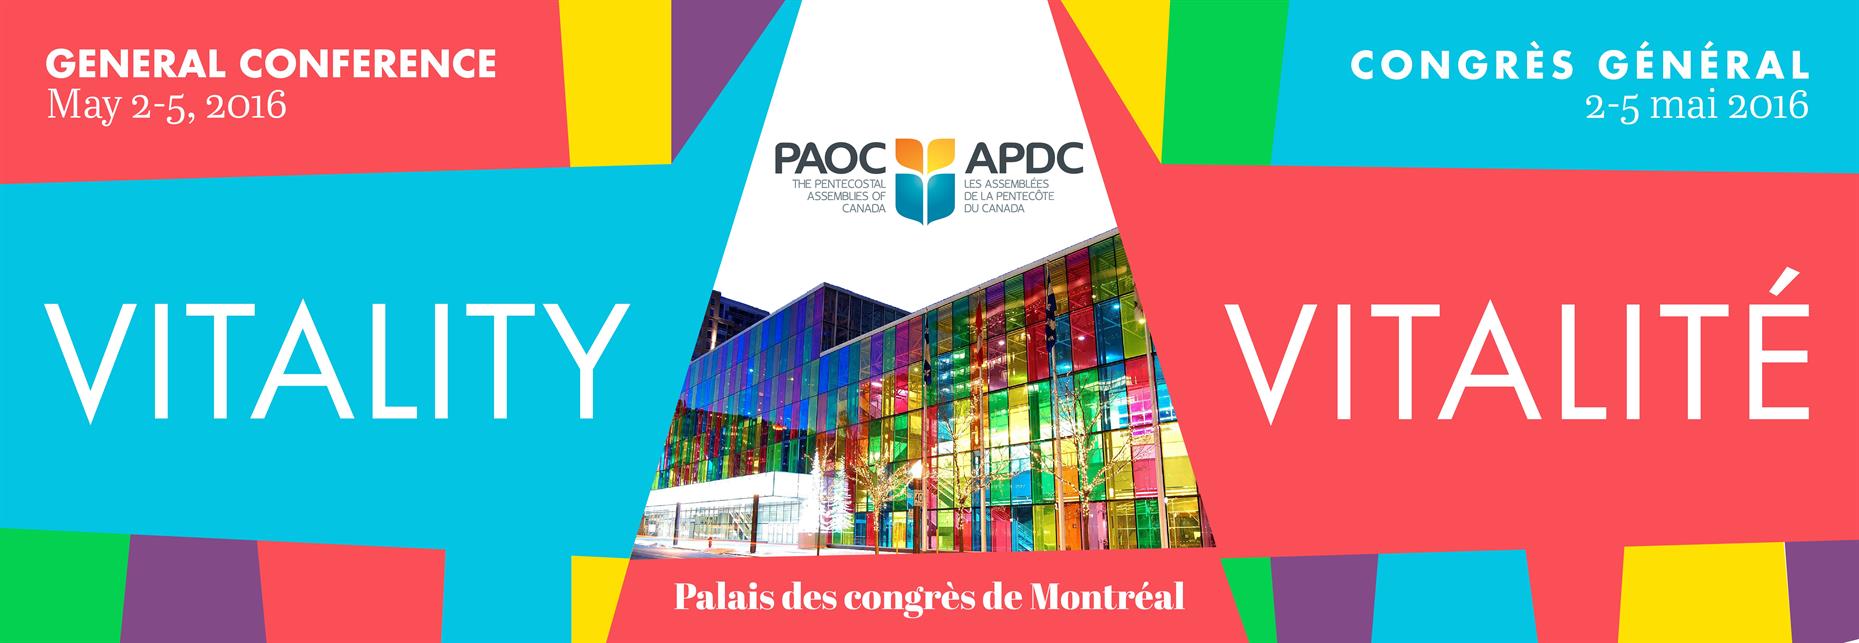 web-banner---palais-de-congres---general-conference-2016b369516cb2cf645badfcff00009d593a